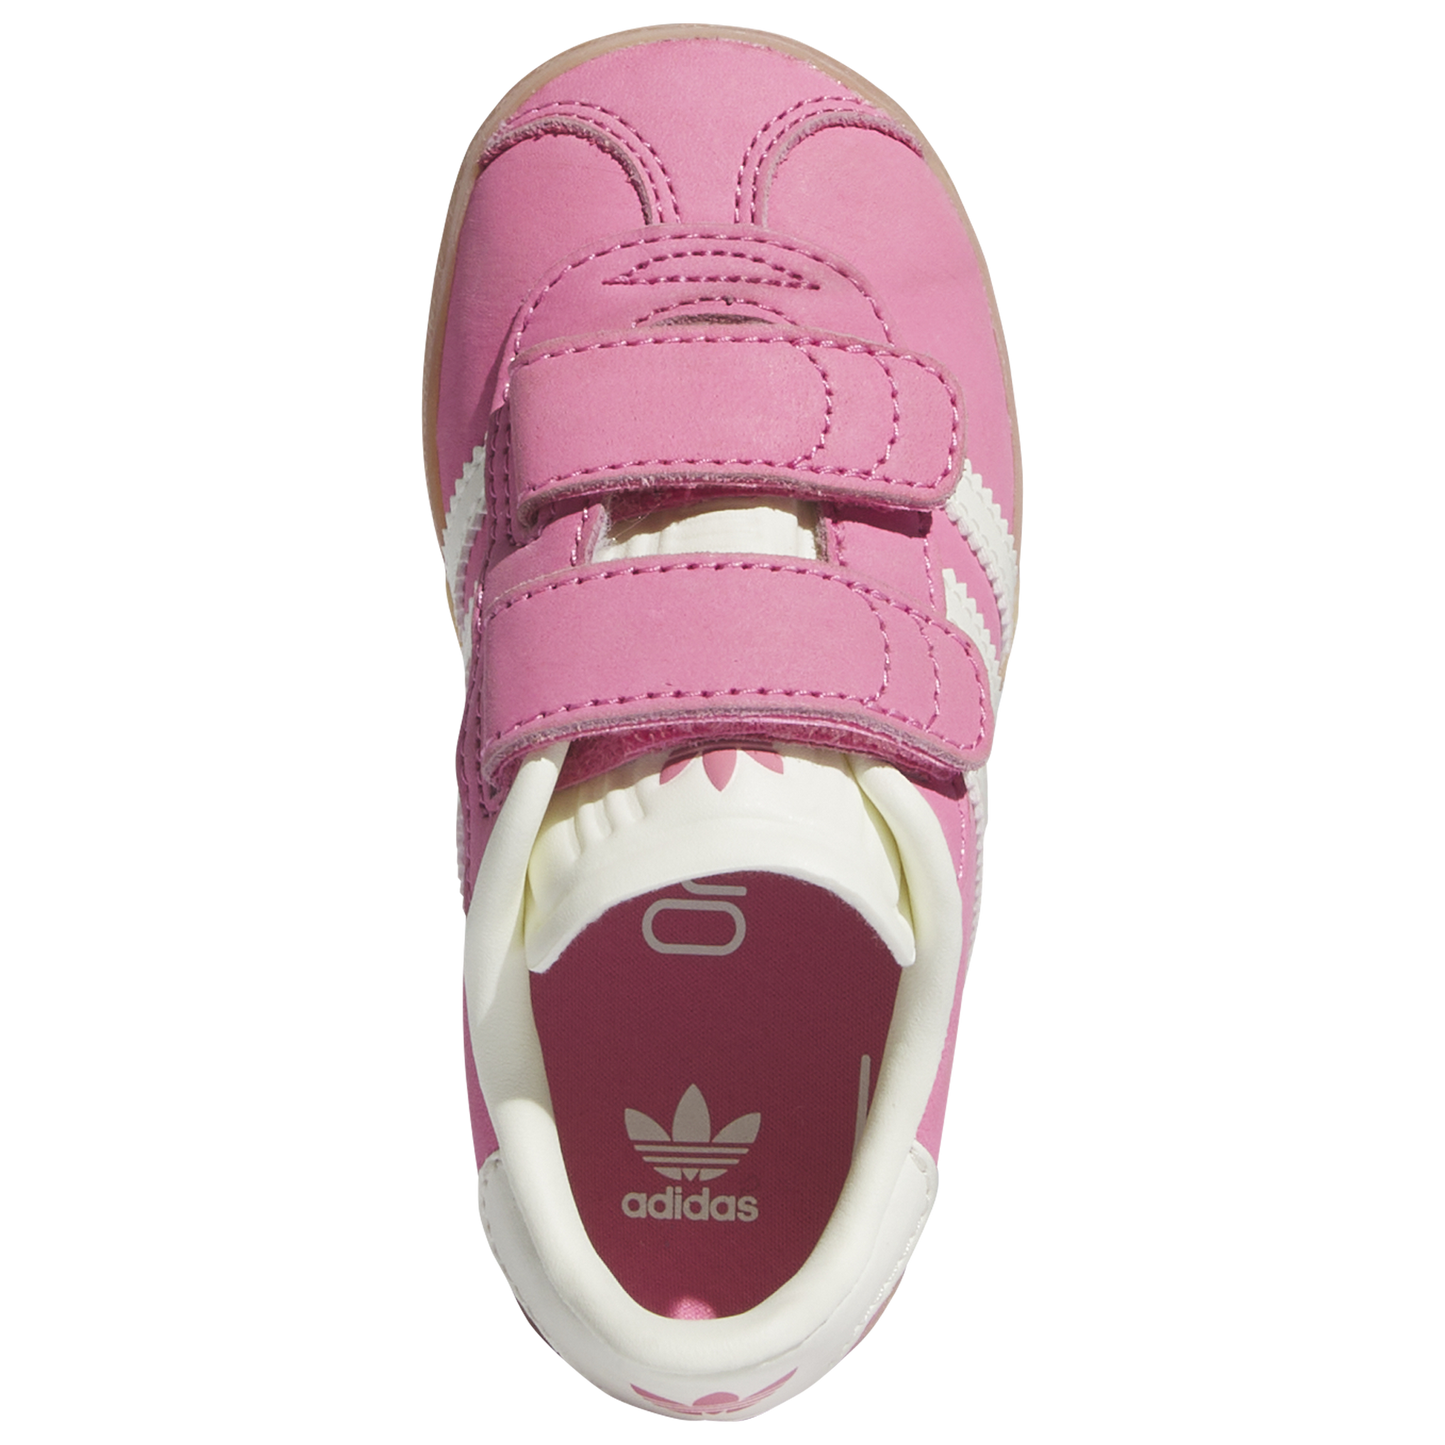 Adidas Gazelle Pink - Toddler